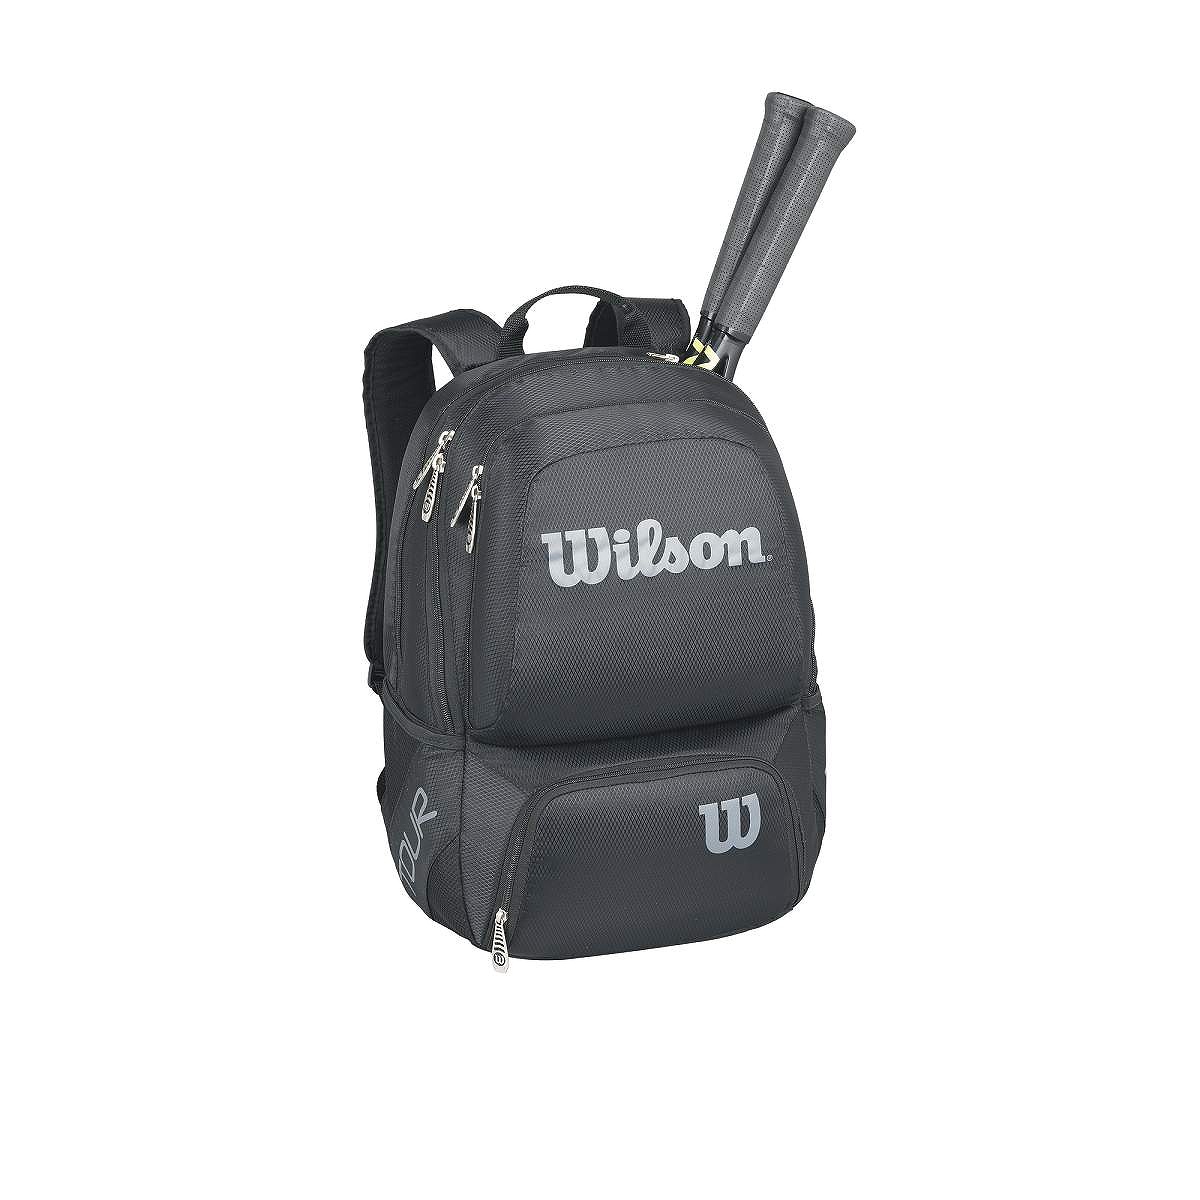 Wilson Tour black medium backpack.jpg